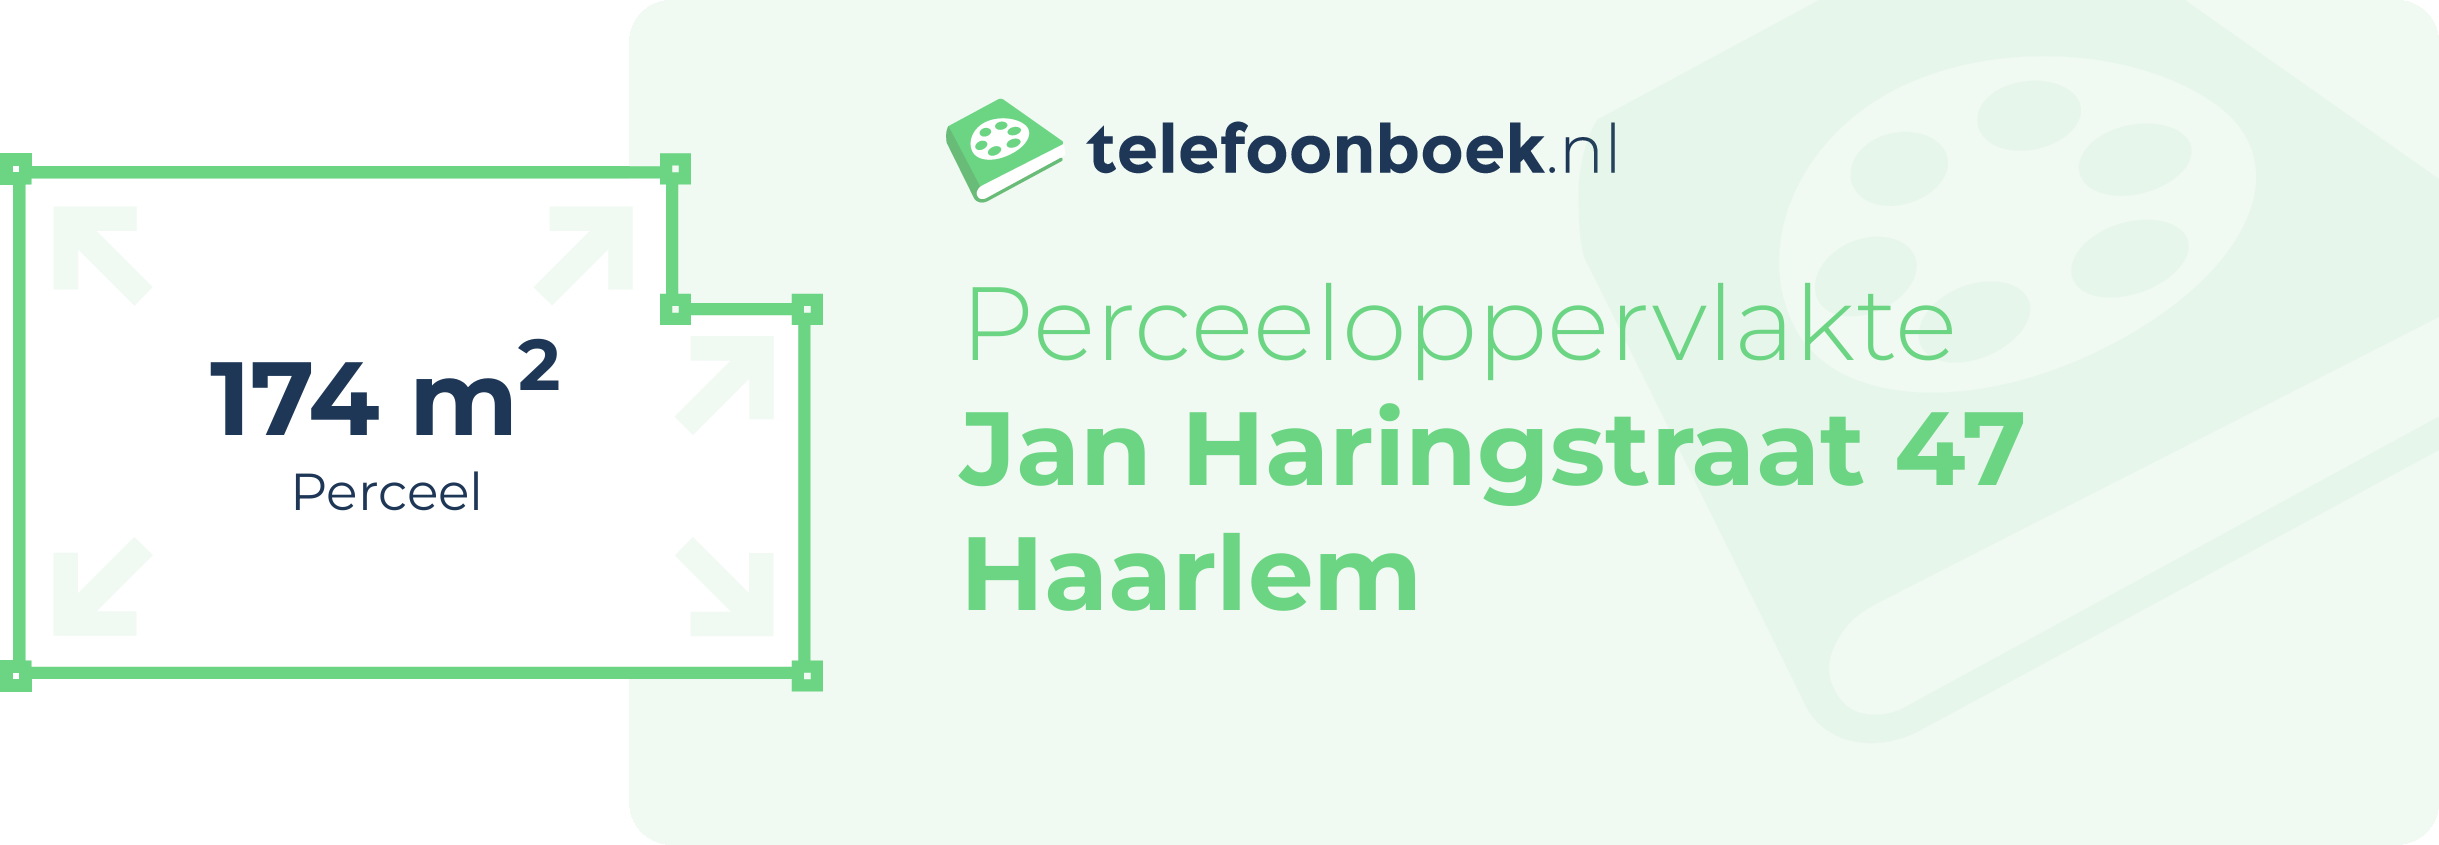 Perceeloppervlakte Jan Haringstraat 47 Haarlem